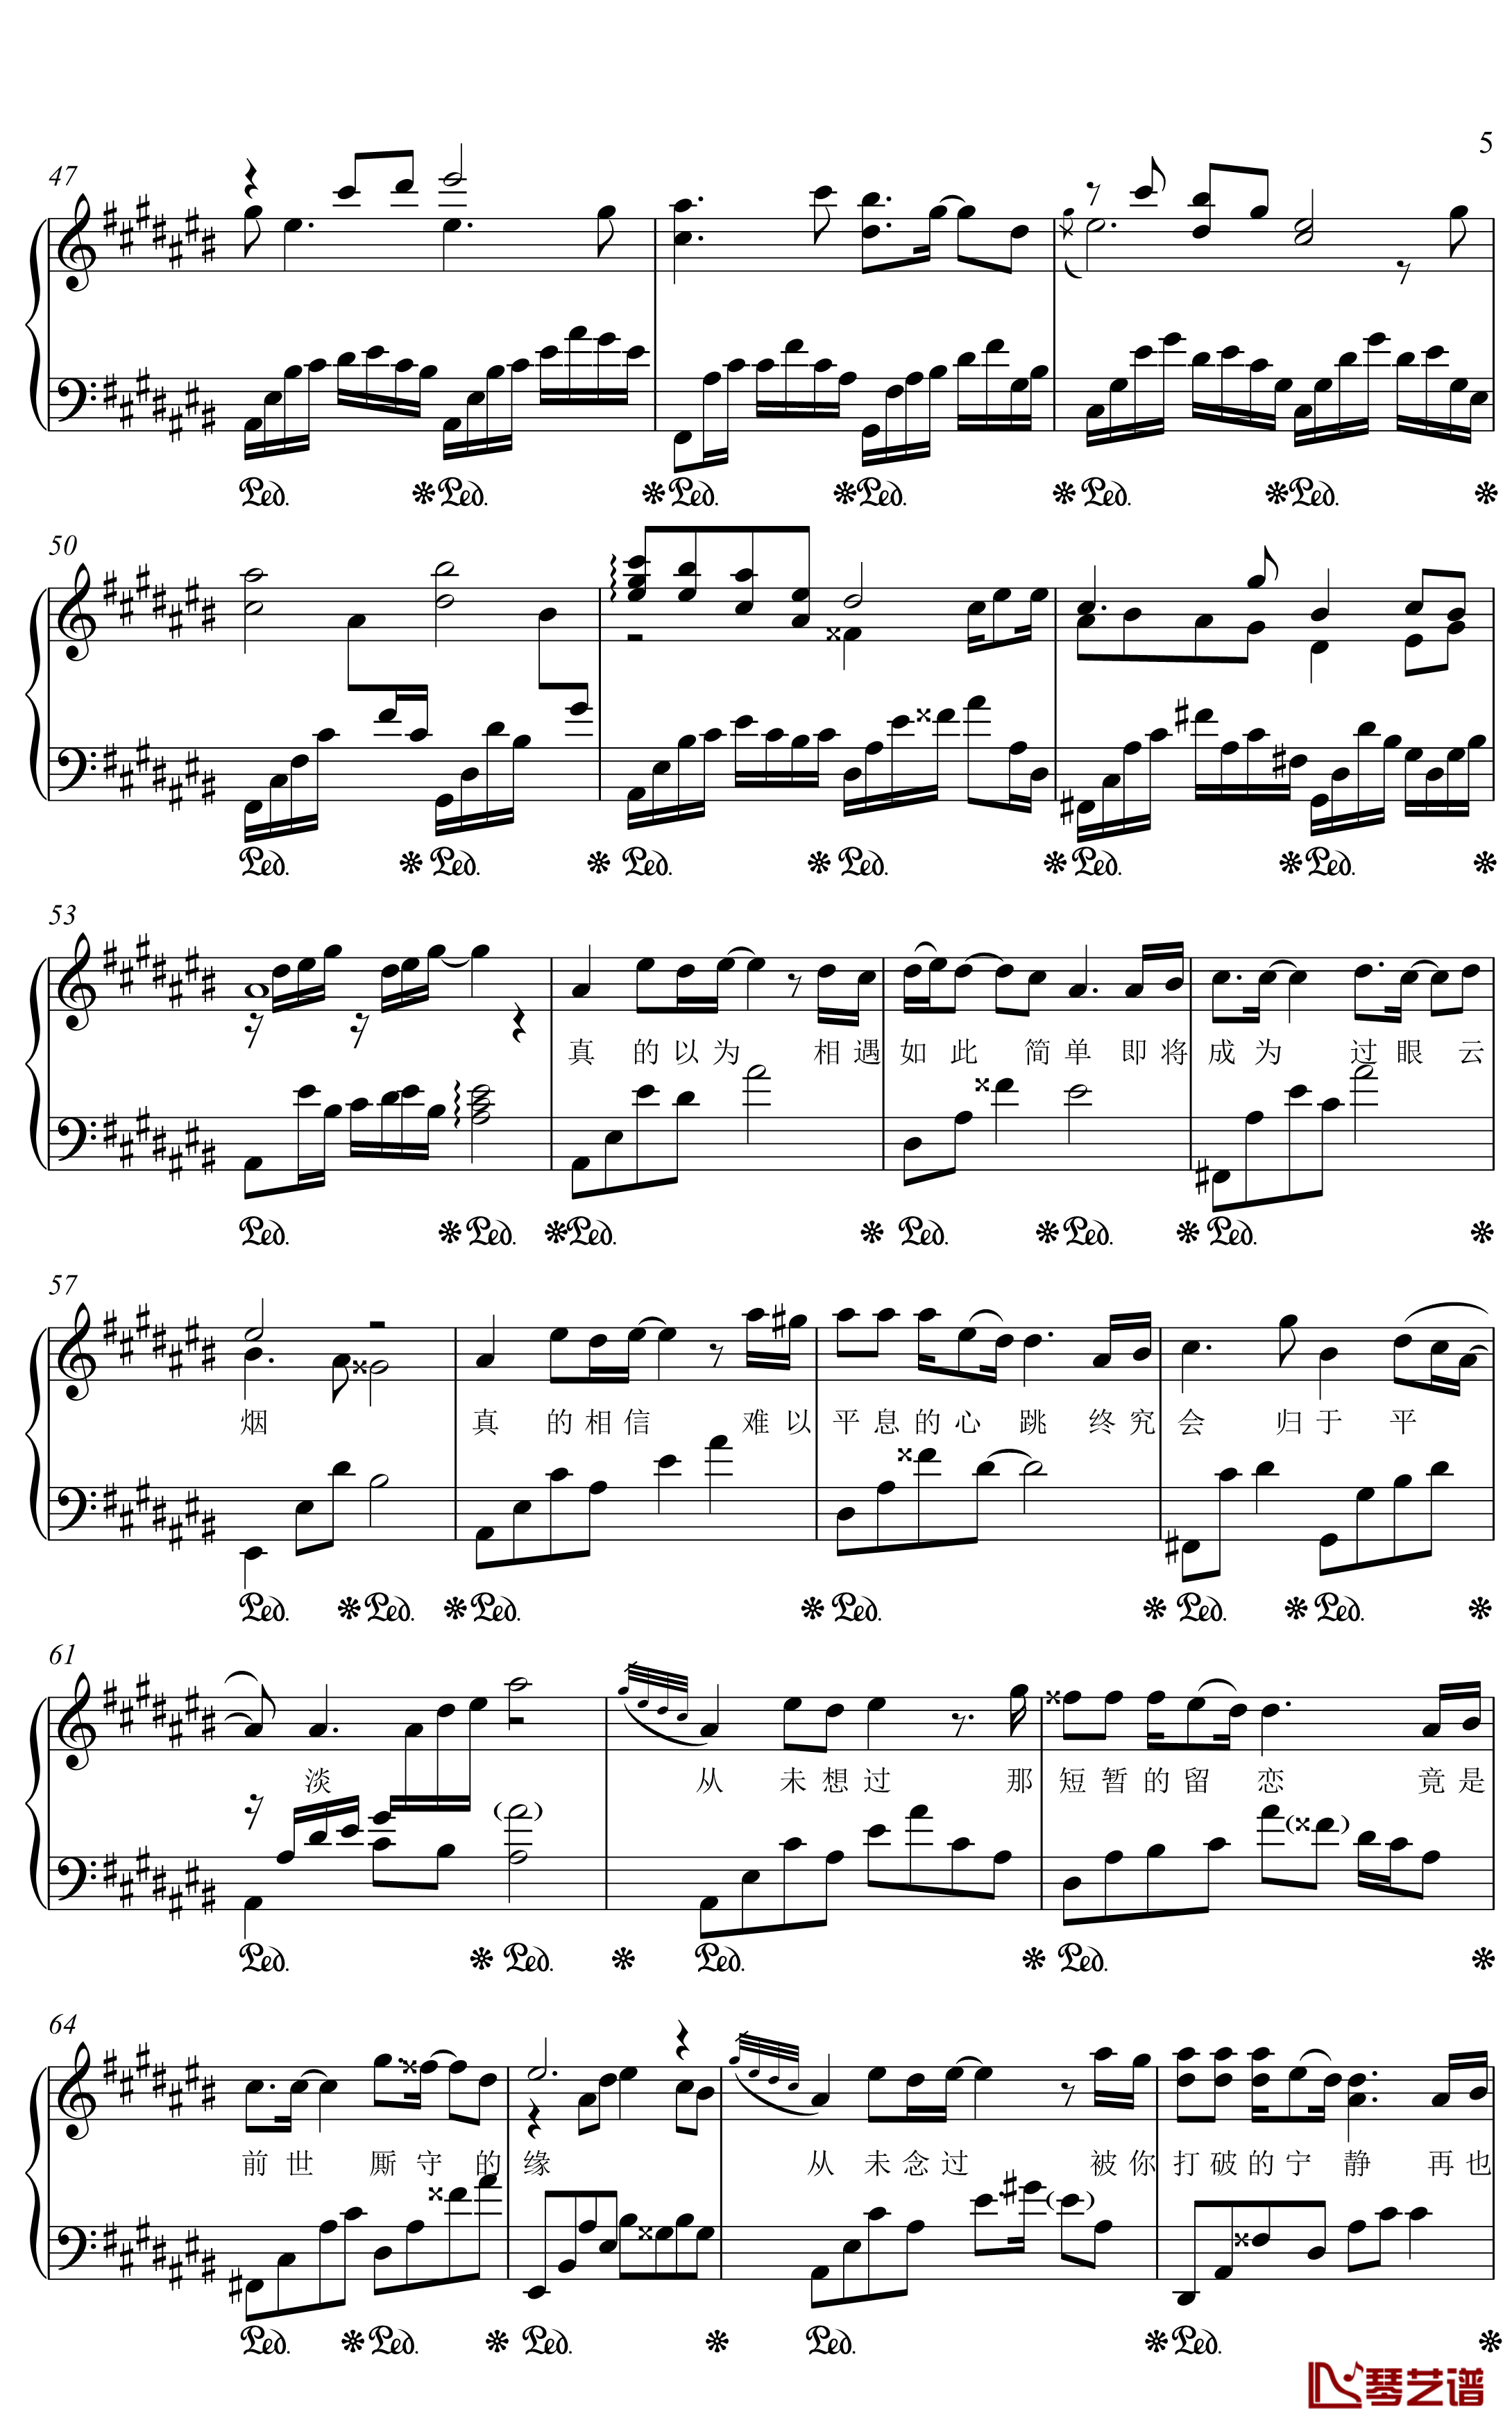 原点钢琴谱 画江湖与不良人-金老师独奏1910035